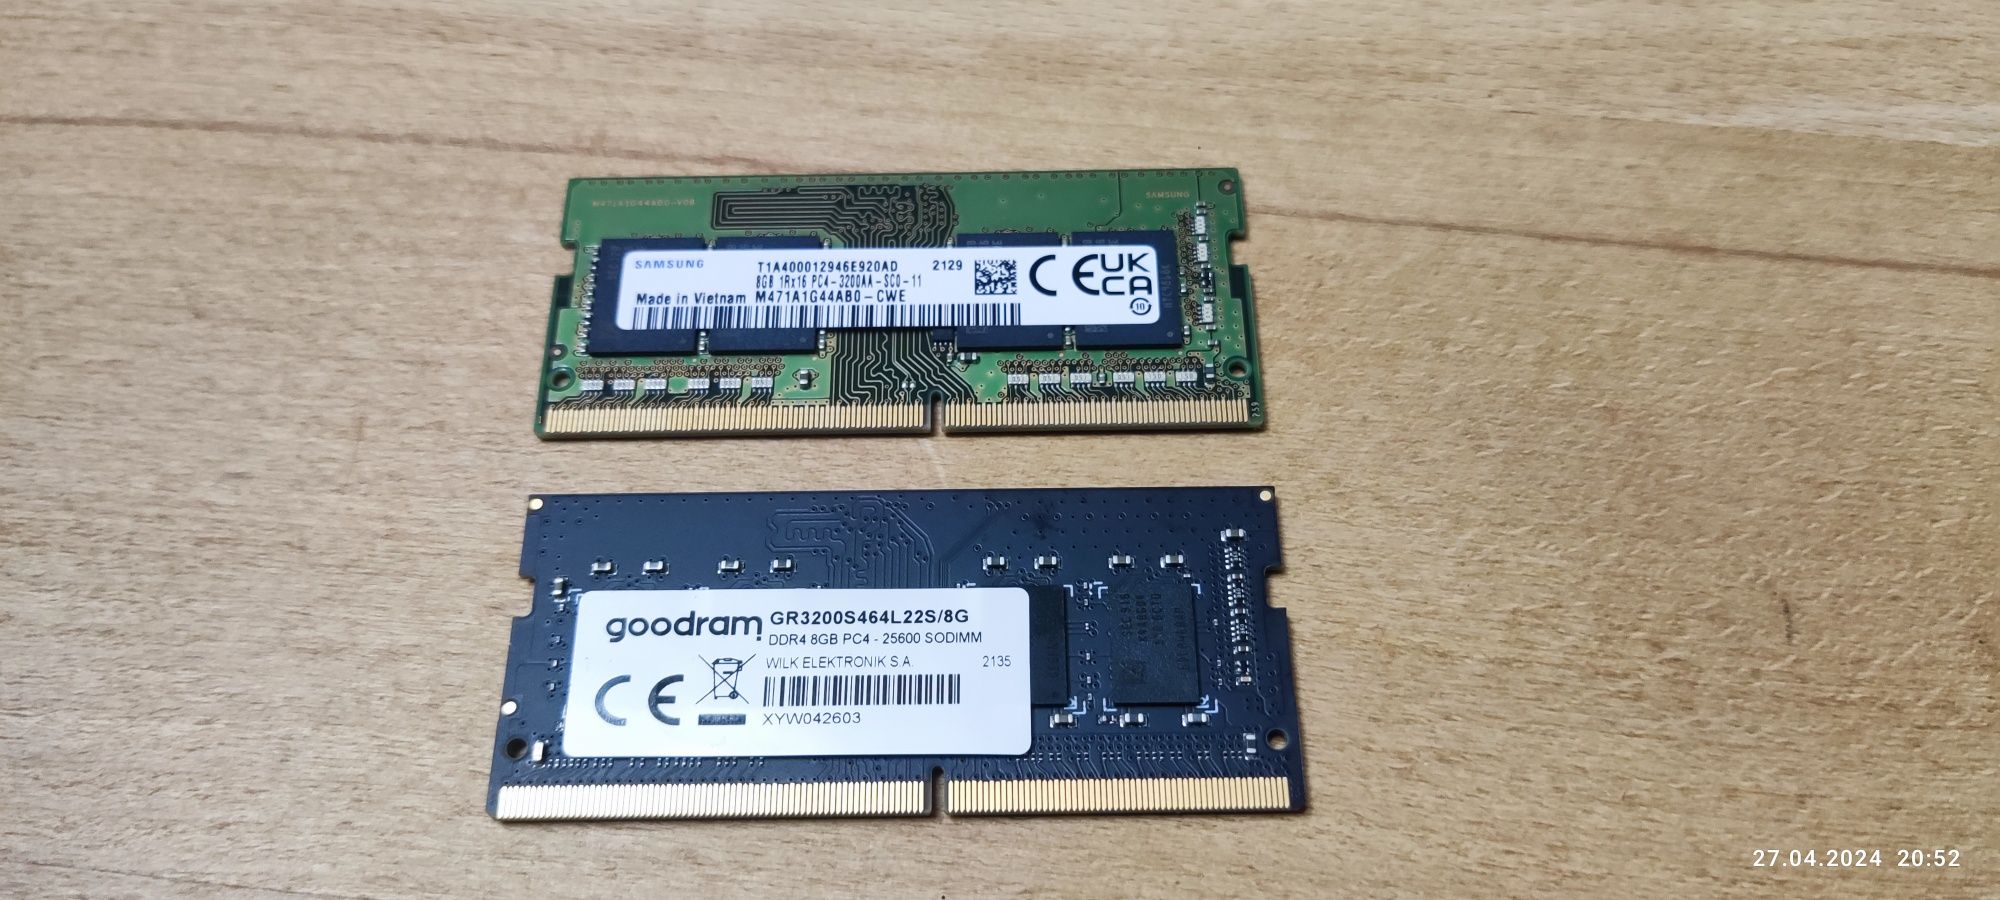 Pamięć RAM DDR4 SODIMM 3200 MHz Laptop 2x 8GB (16GB) Goodram, Samsung